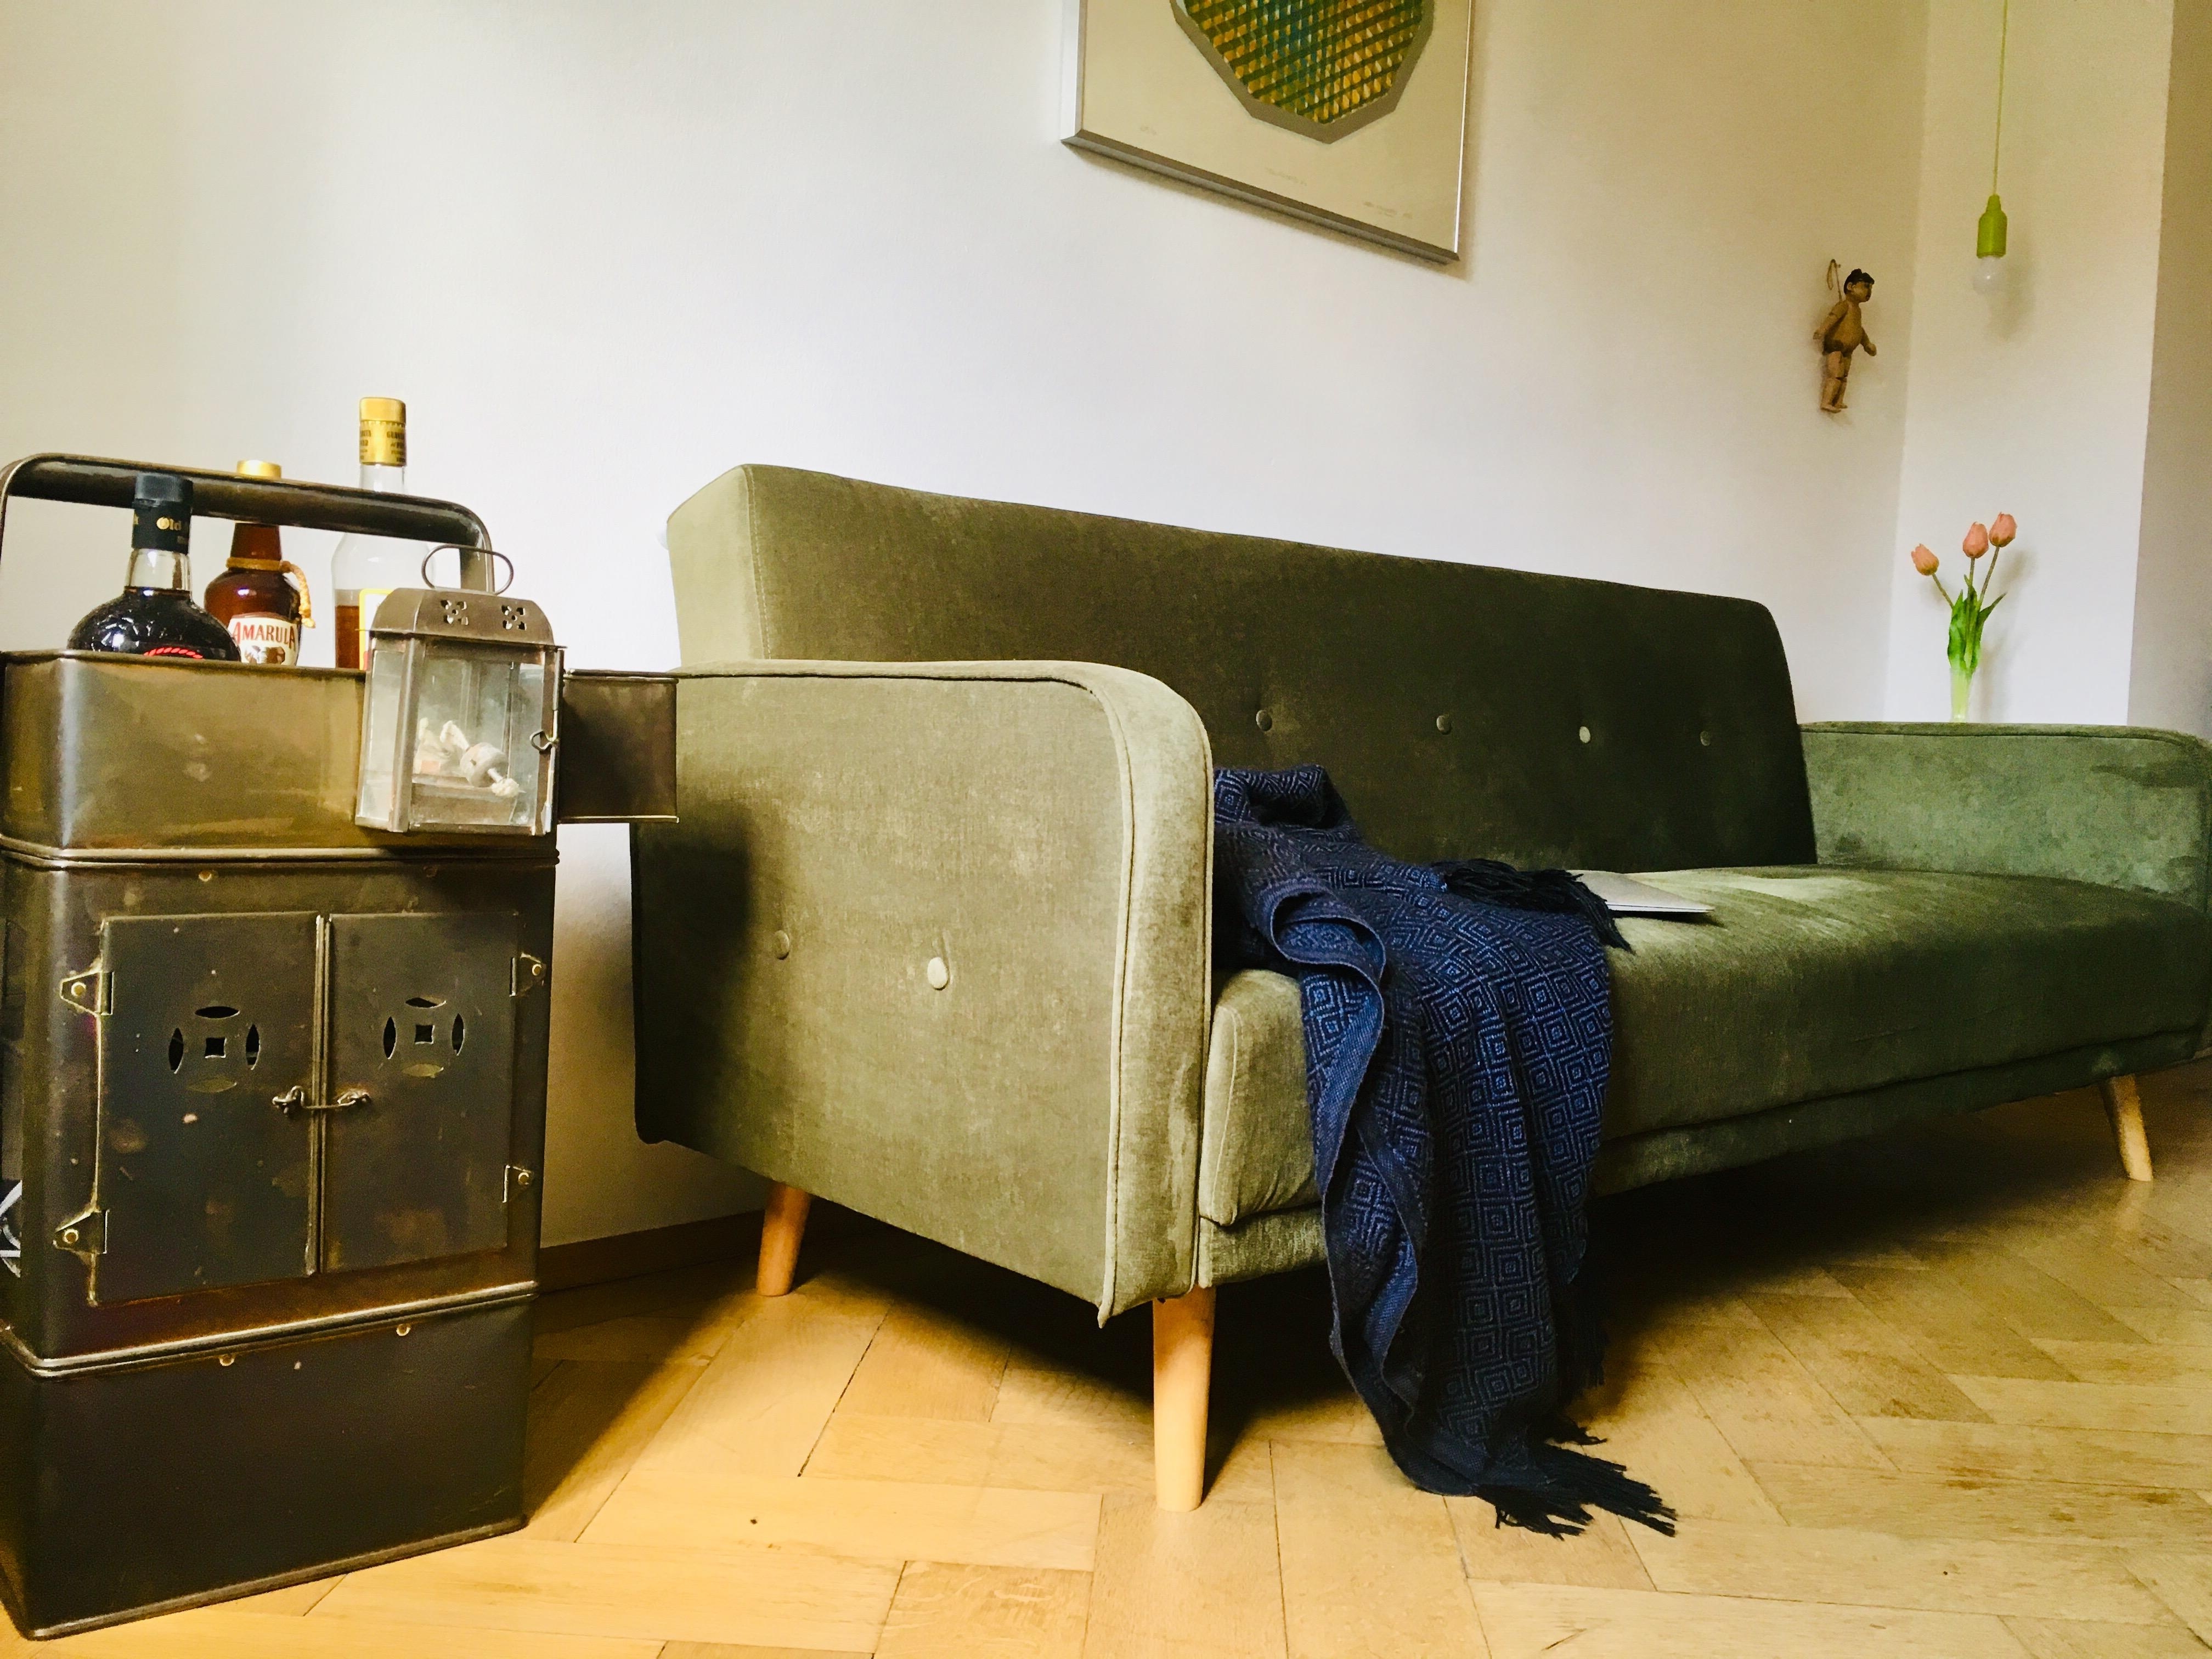 #livingchallenge #wohnzimmergestaltung #couch